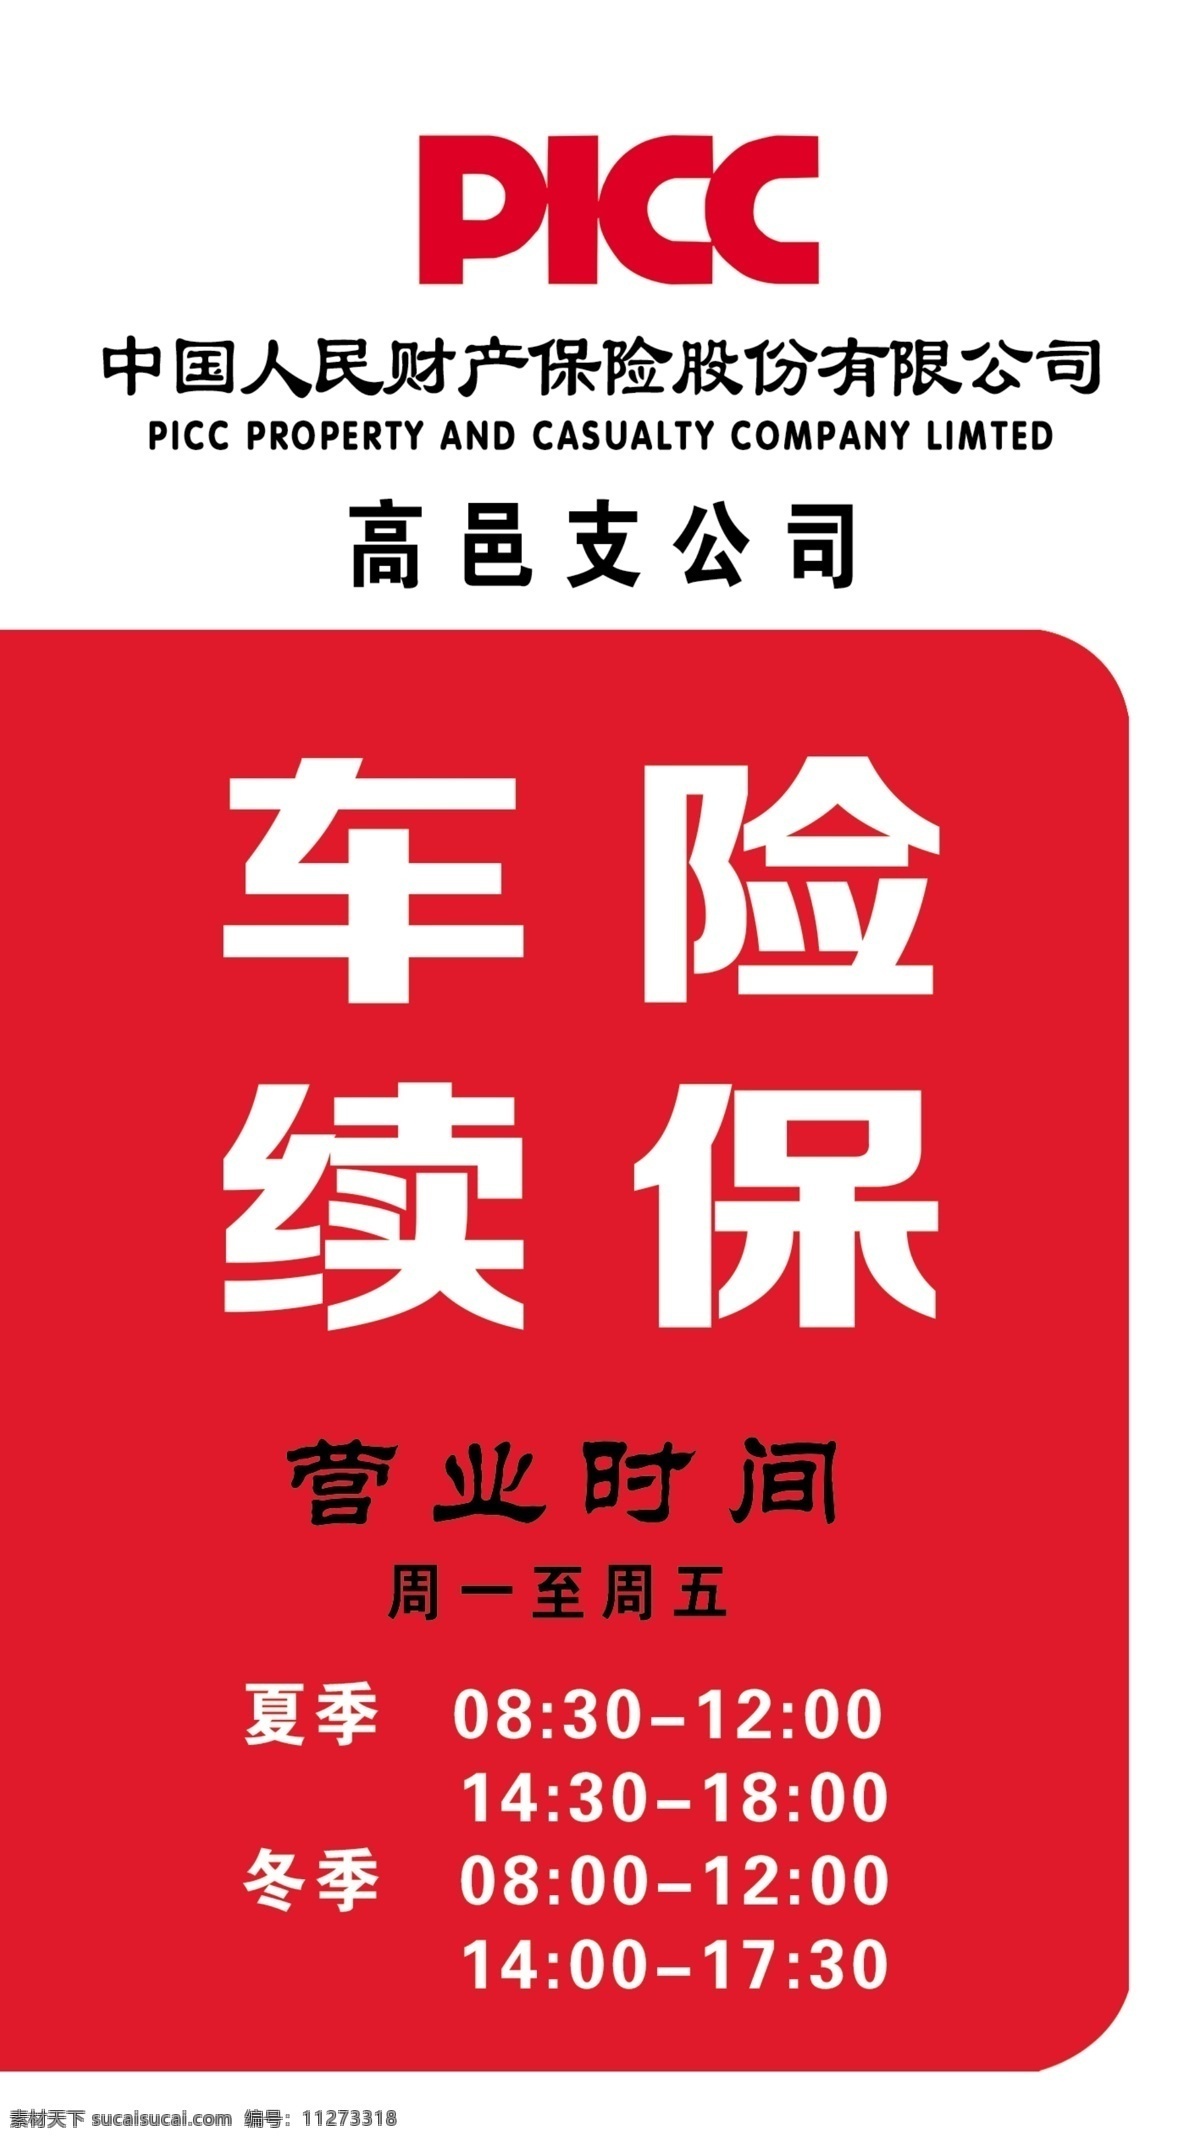 中国人民保险 保险 人保 人民保险 保险时间表 室外广告设计